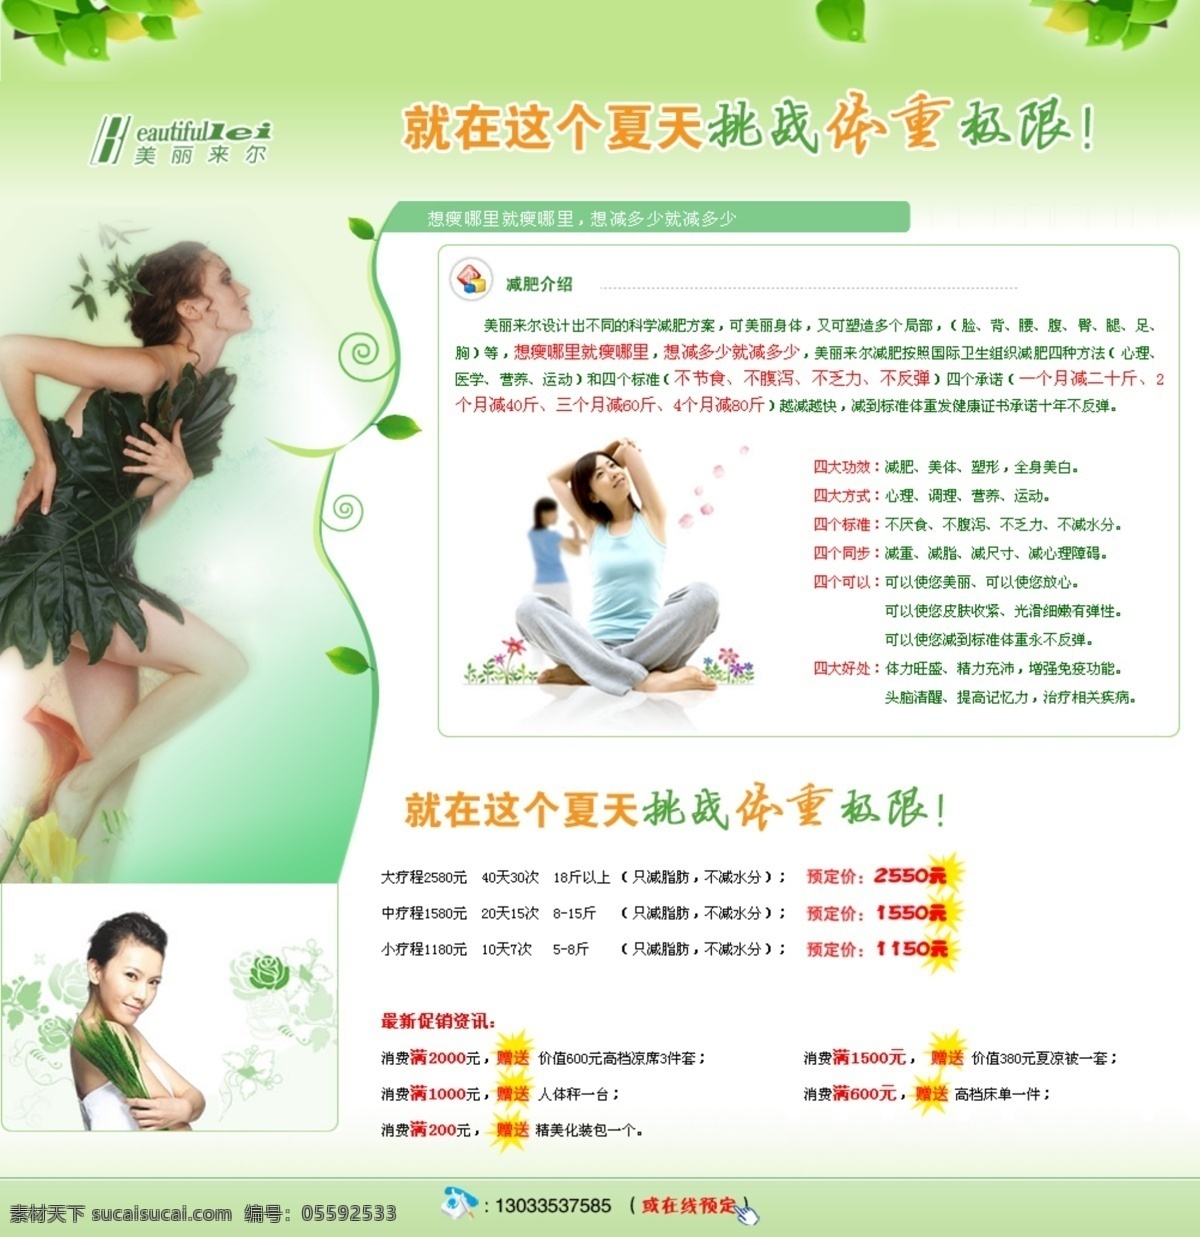 减肥瘦身 促销 专题 网页模板 促销专题 减肥 瘦身 中国风格 绿色色调 网页素材